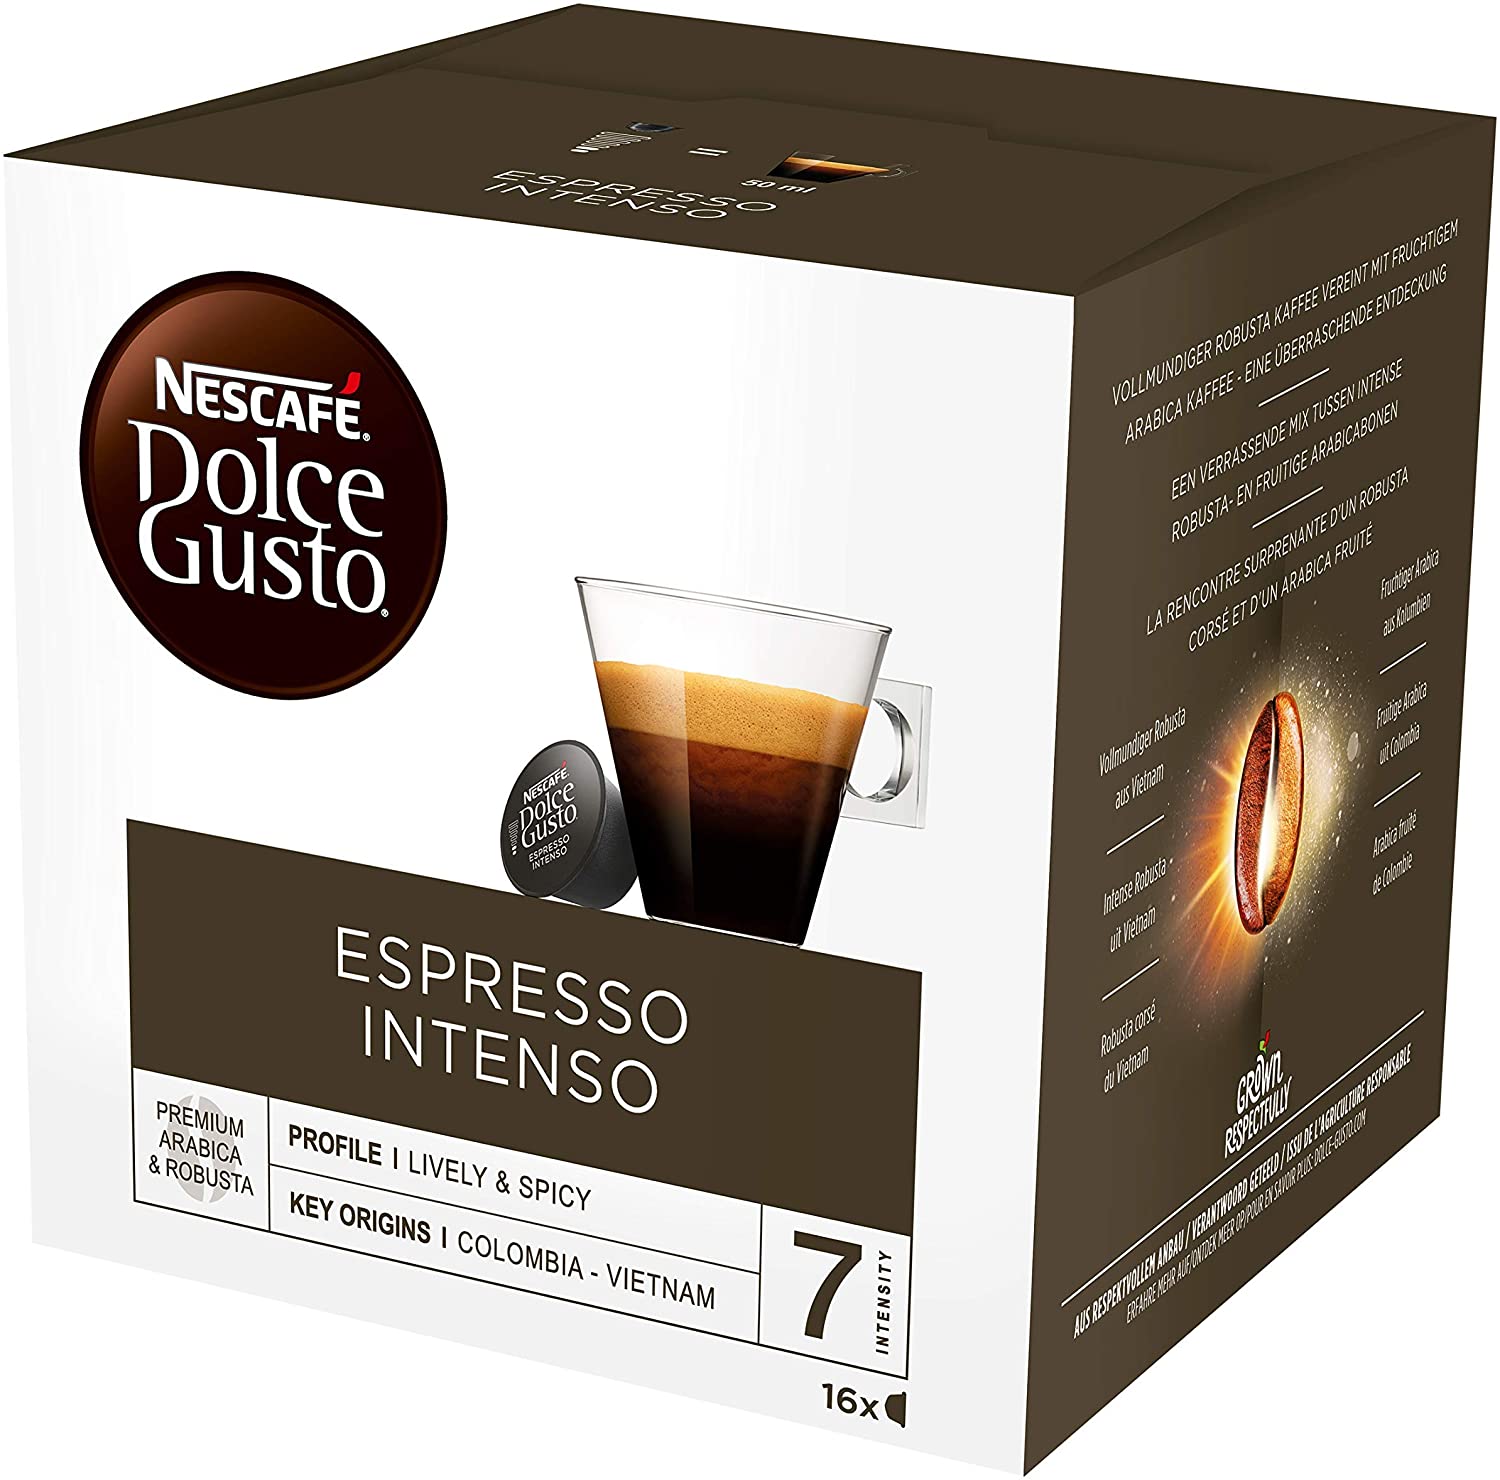 Nescafe Dolce Gusto Espresso Intenso 16 cap (94 g.) กาแฟสด เอสเพรสโซ อินเทนโซ ตราเนสกาแฟ ดอลเช่กุสโต้ 16 แคปซูล (94 กรัม)